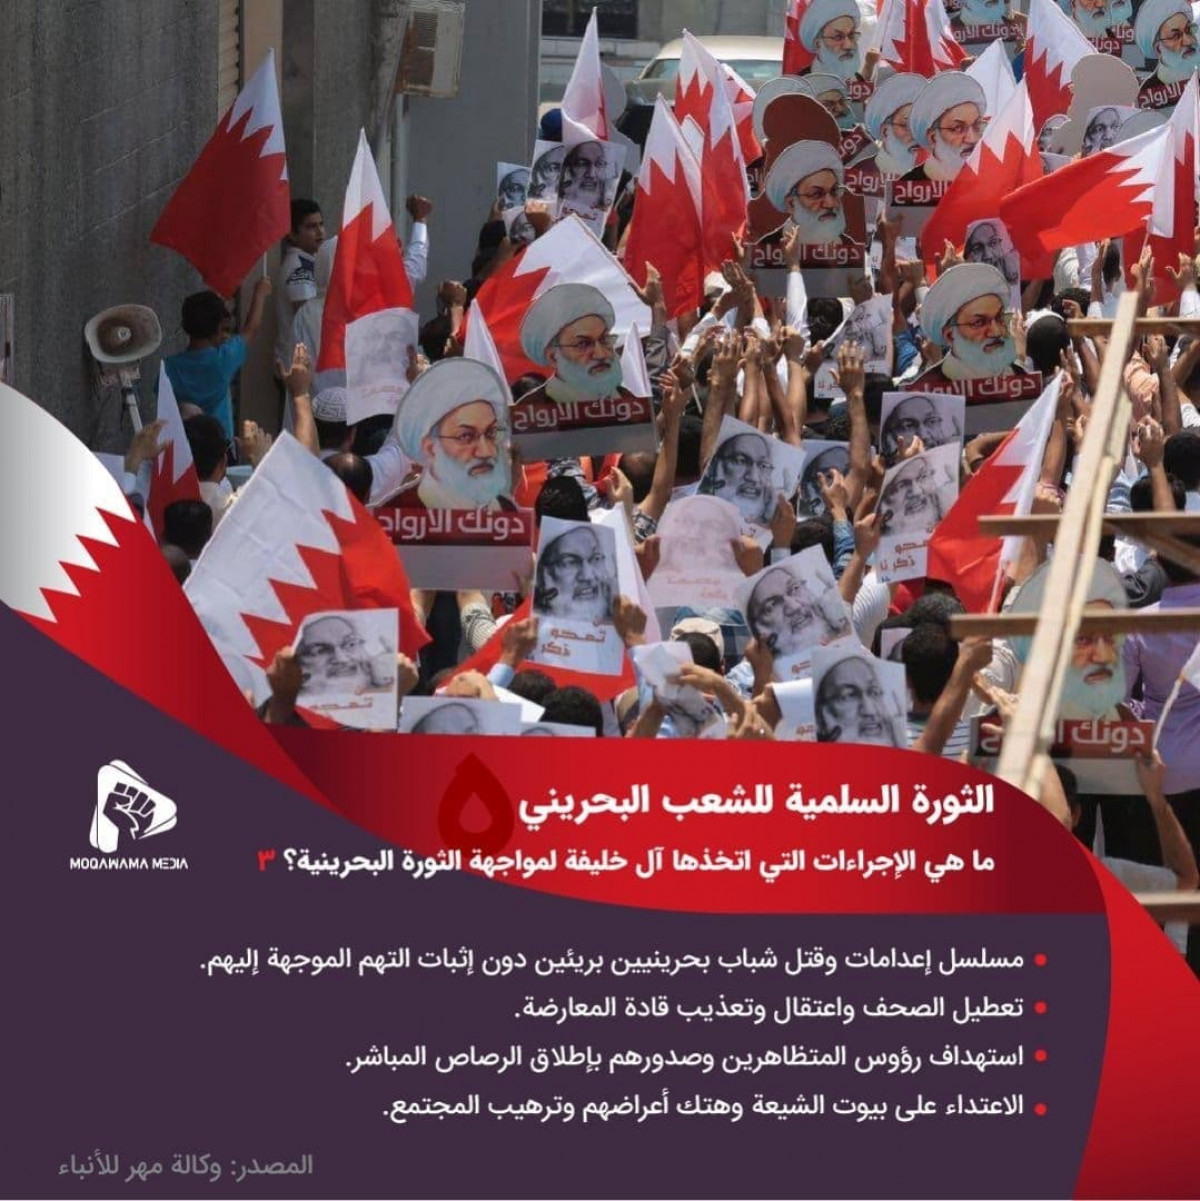 الثورة السلمية للشعب البحريني / ما هي الإجراءات التي اتخذها آل خليفة لمواجهة الثورة البحرينية؟ 3